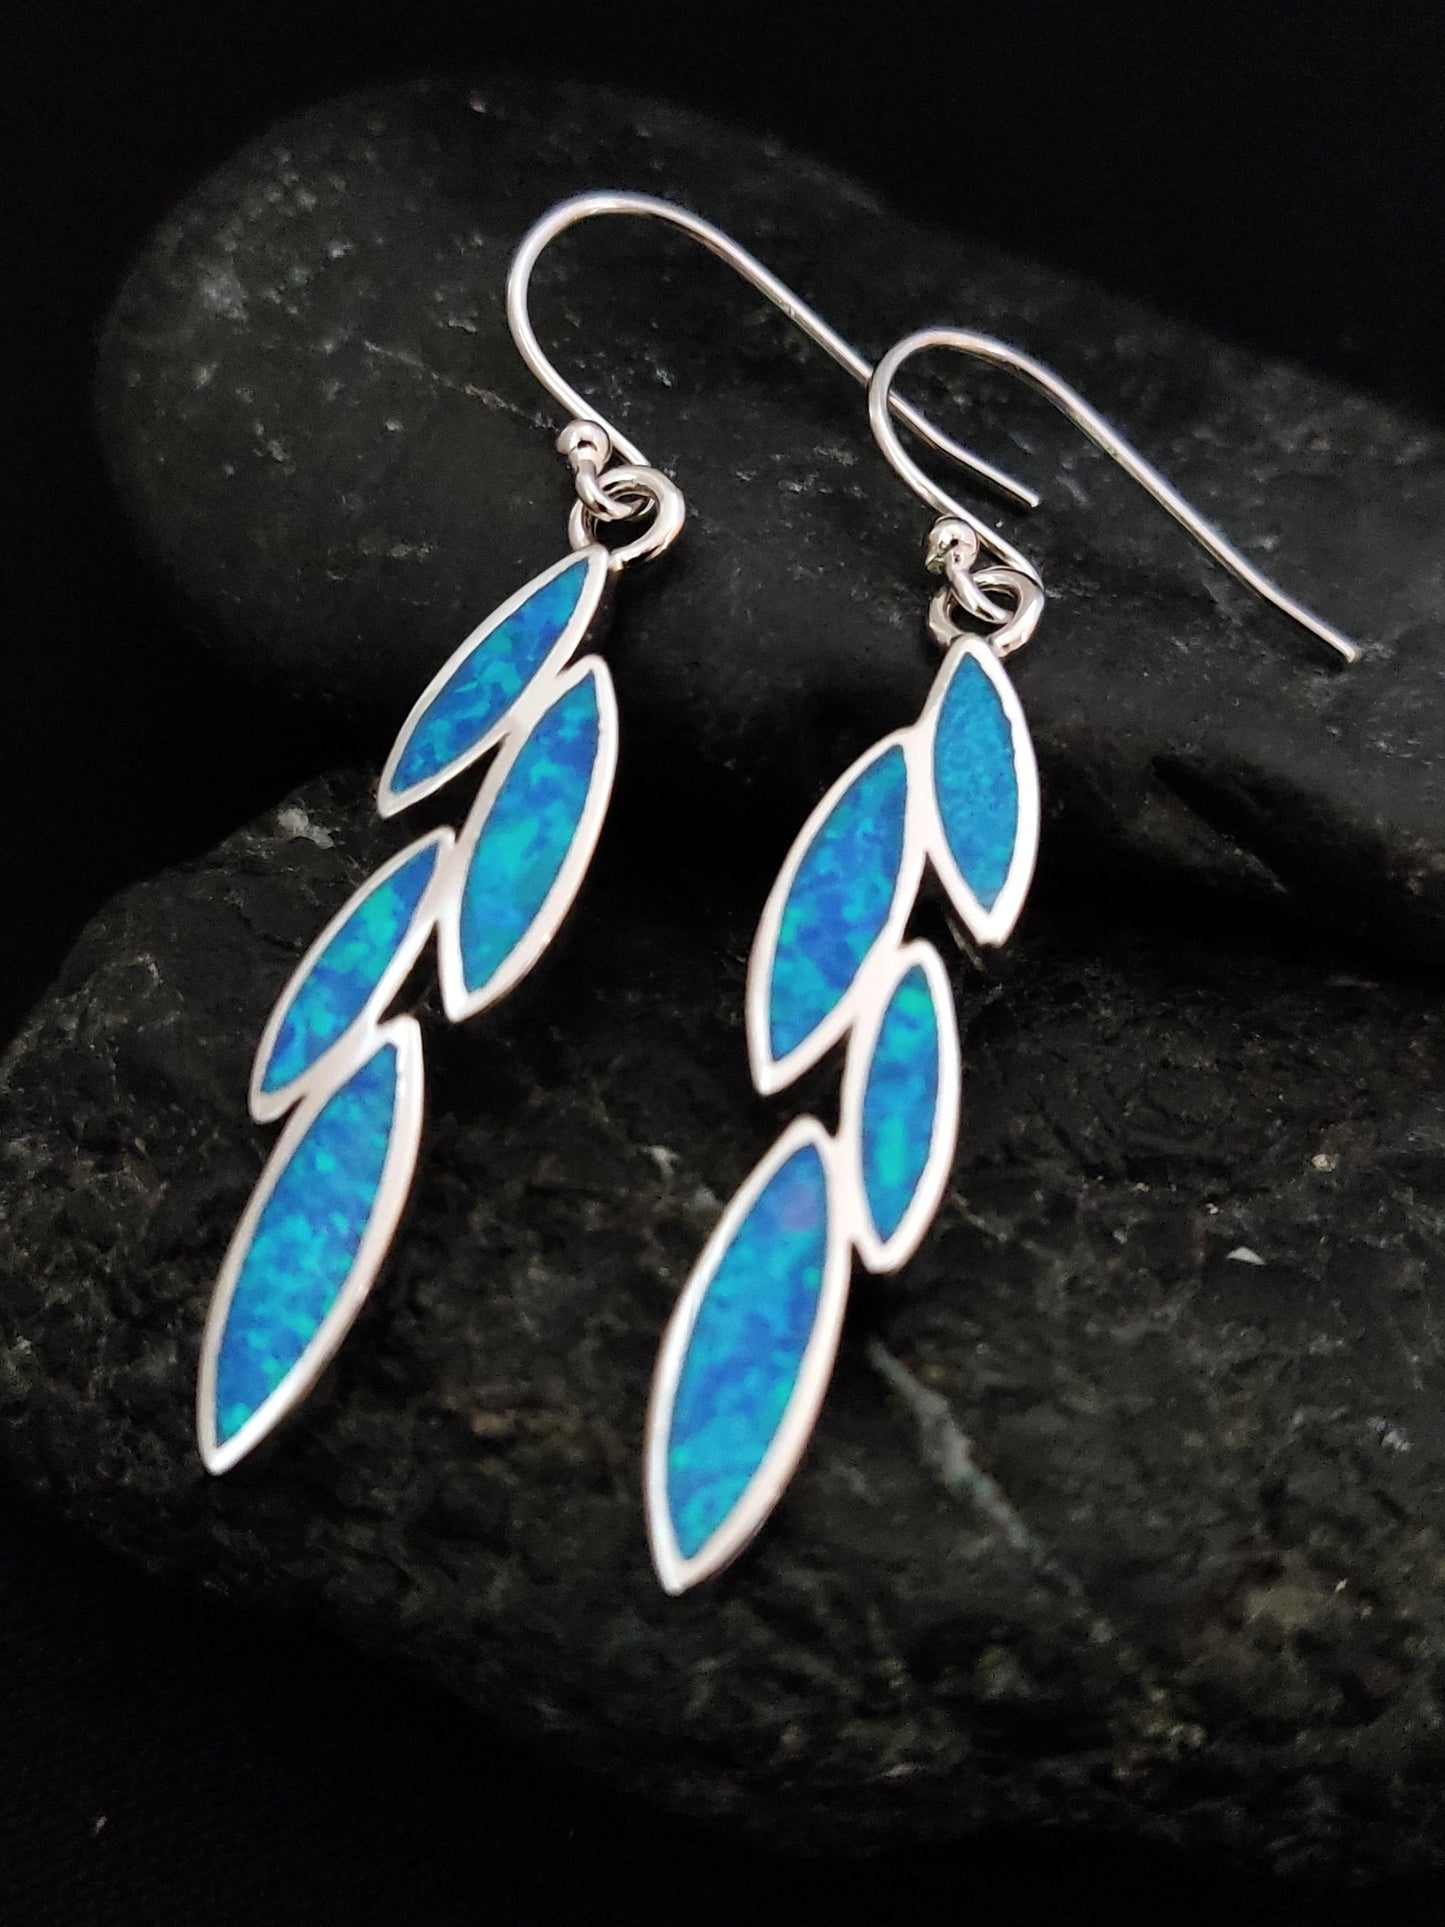 Sterling Silver 925 Greek Leaf Leaves Blue Opal Dangle Earrings 35x8mm, Leaf Silver Earrings, Griechische Ohrringe, Bijoux Grecque, 25x12mm